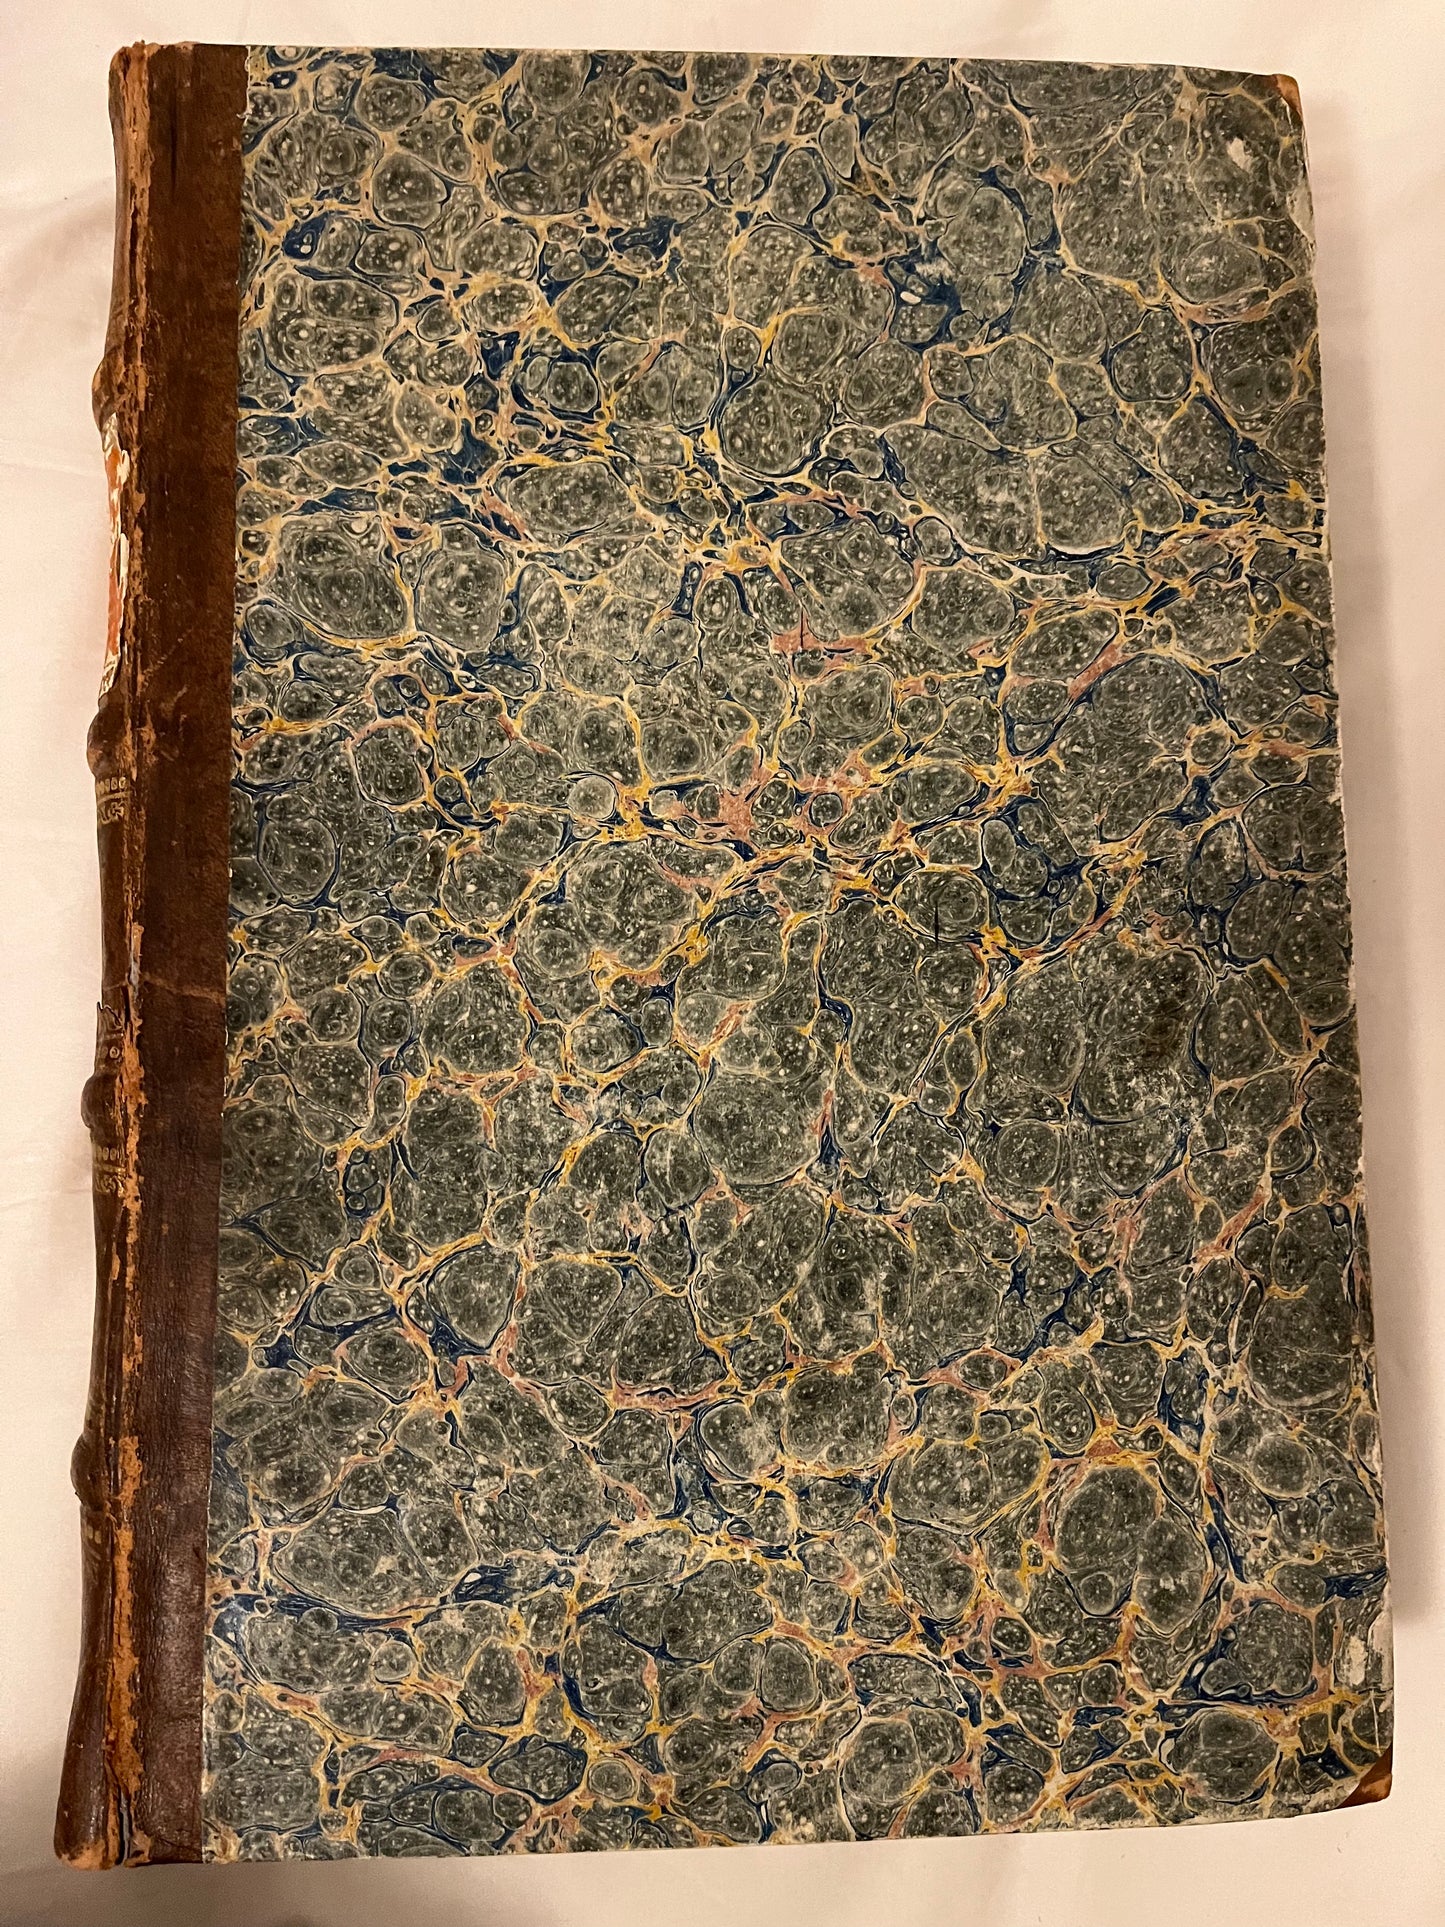 Historiarum Indicarum libri XVI. Selectarum, item, ex Jindia Epistolarum. eodem interprete Libri IV - Giovanni Pietro Maffei - 1st Edition - 1588